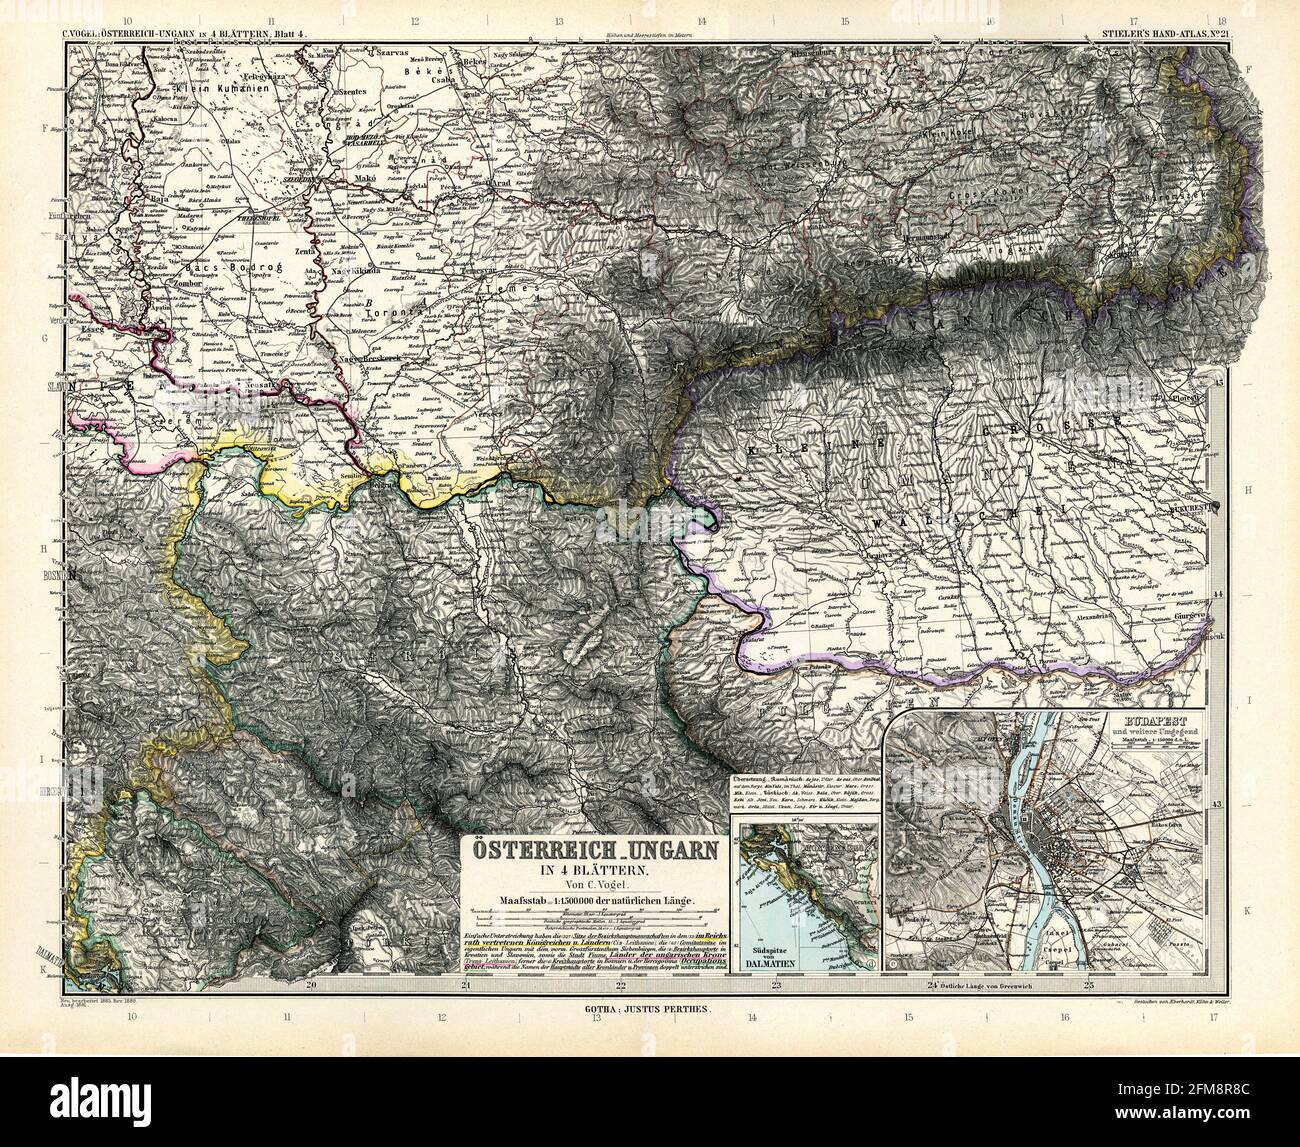 Kupferstichkarte von Österreich-Ungarn aus dem 19. Jahrhundert. Alle Karten sind wunderschön farbig und illustriert und zeigen die Welt zu dieser Zeit. Stockfoto